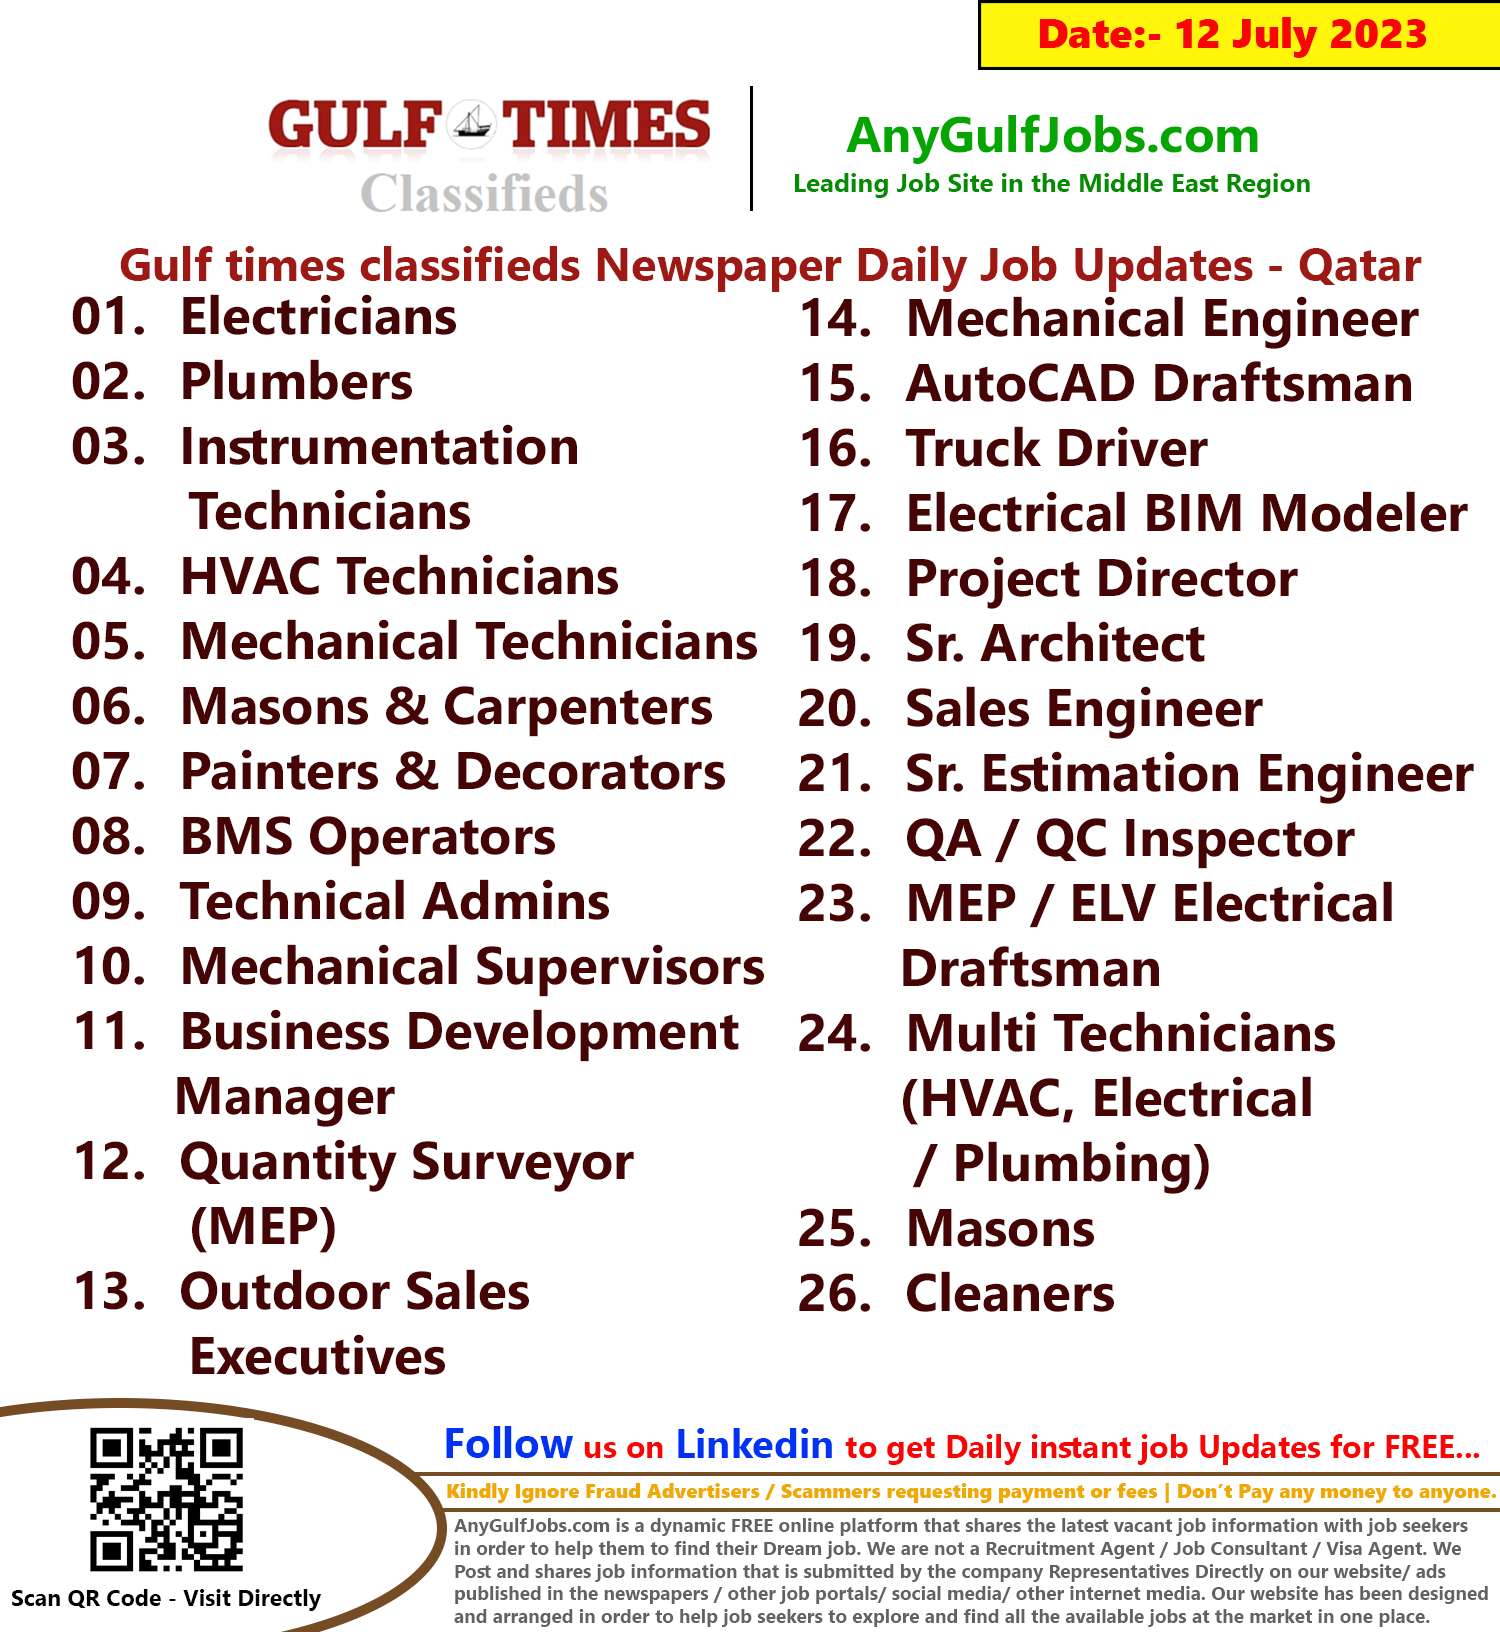 Gulf times classifieds Job Vacancies Qatar - 12 July 2023